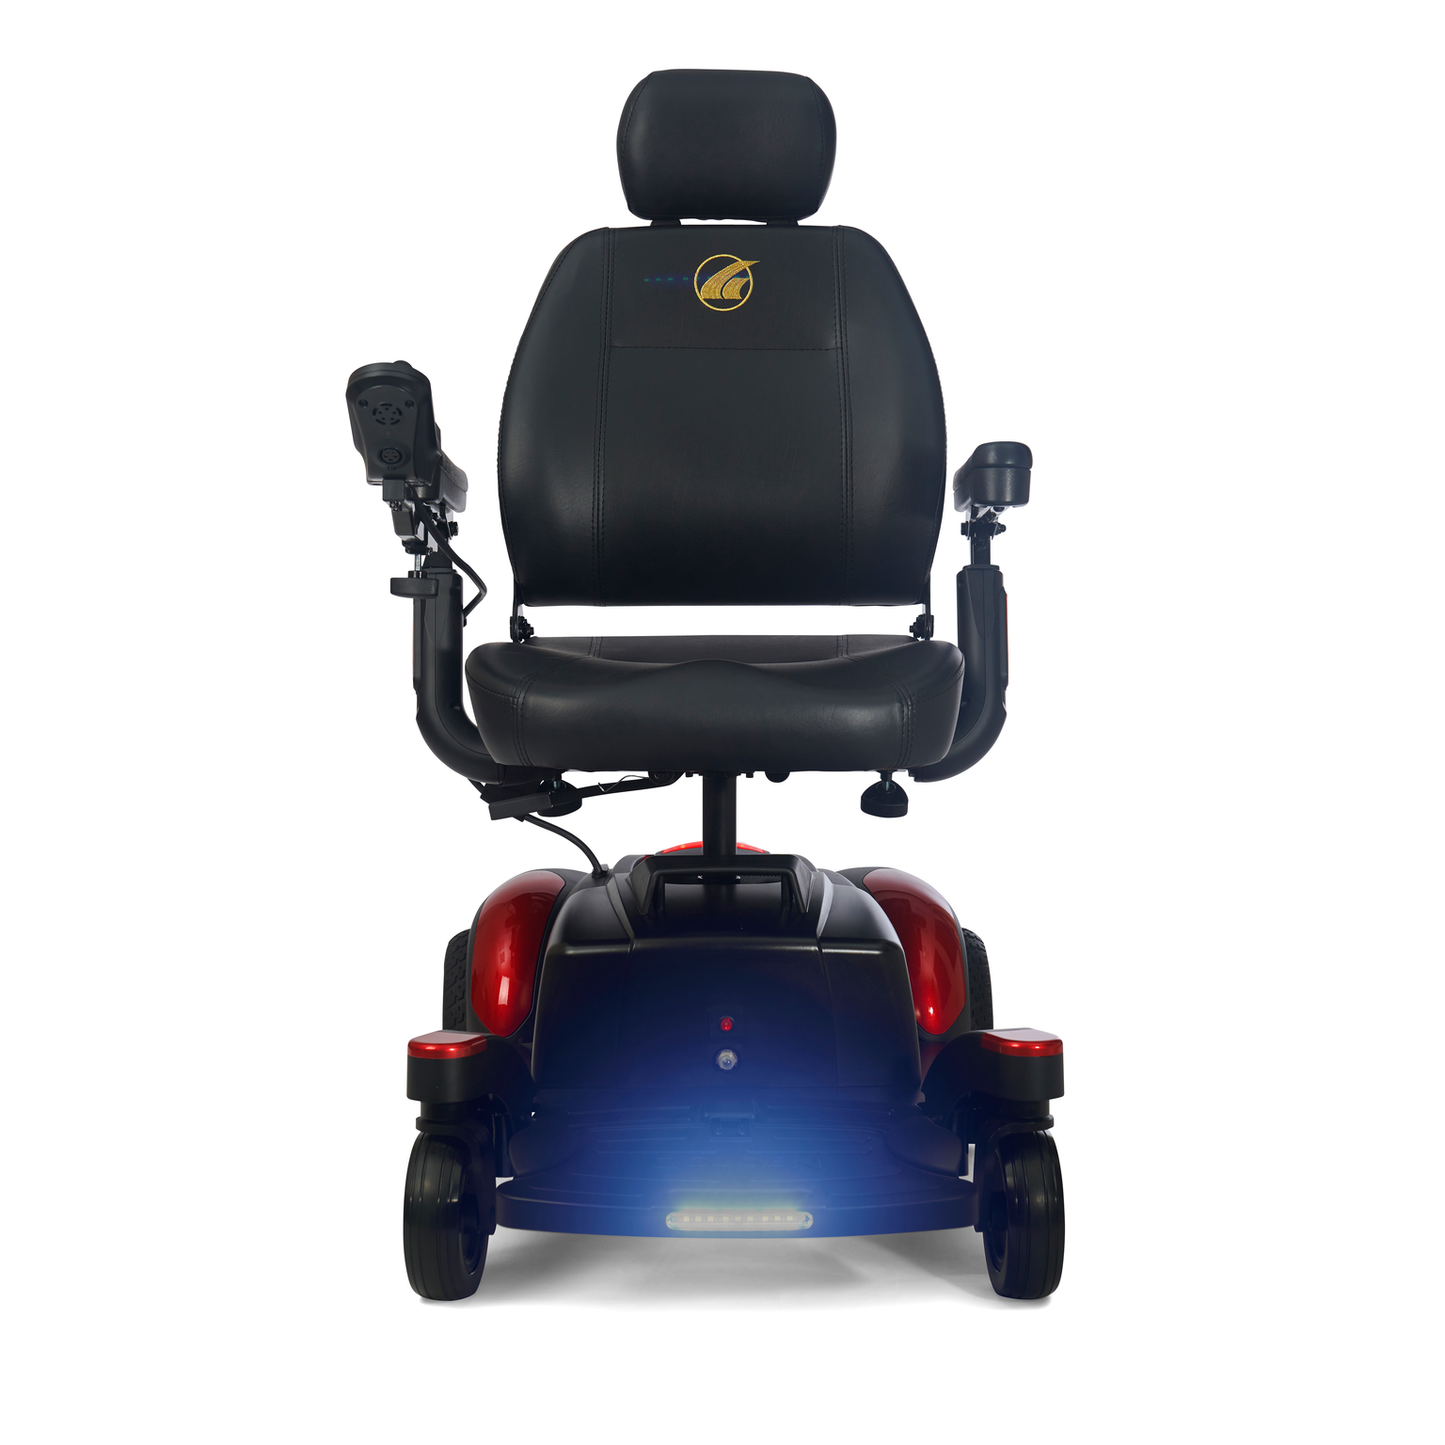 Travel Power Wheelchair - Golden Technologies - BuzzAbout - GP164A - Standard 17"x16" Seat